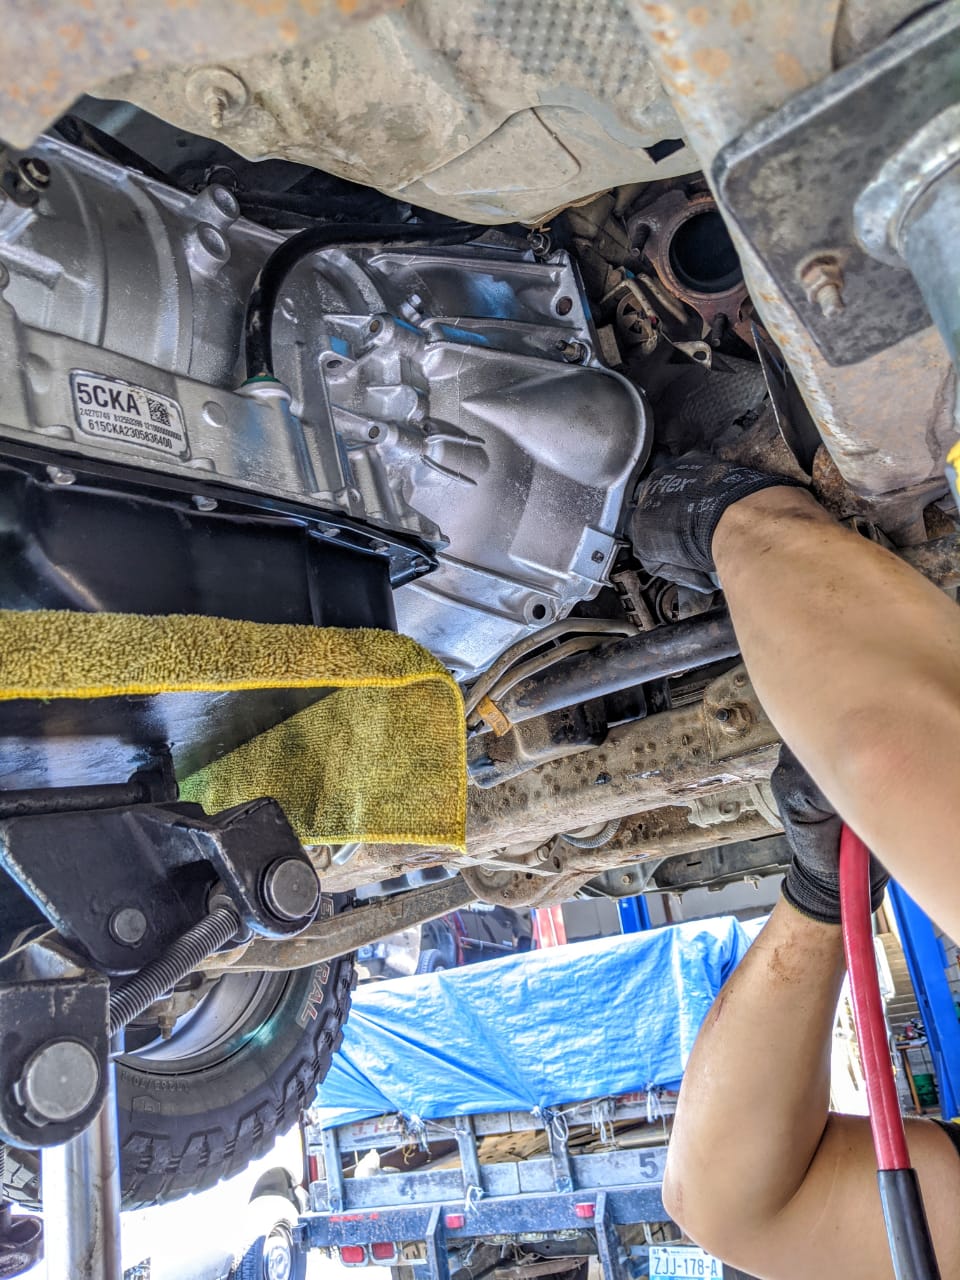 Transmisiones Automáticas - car repair  | Photo 6 of 8 | Address: C. Democracia 22536, Col. Ejido Matamoros, 22204 Tijuana, B.C., Mexico | Phone: 664 901 7040